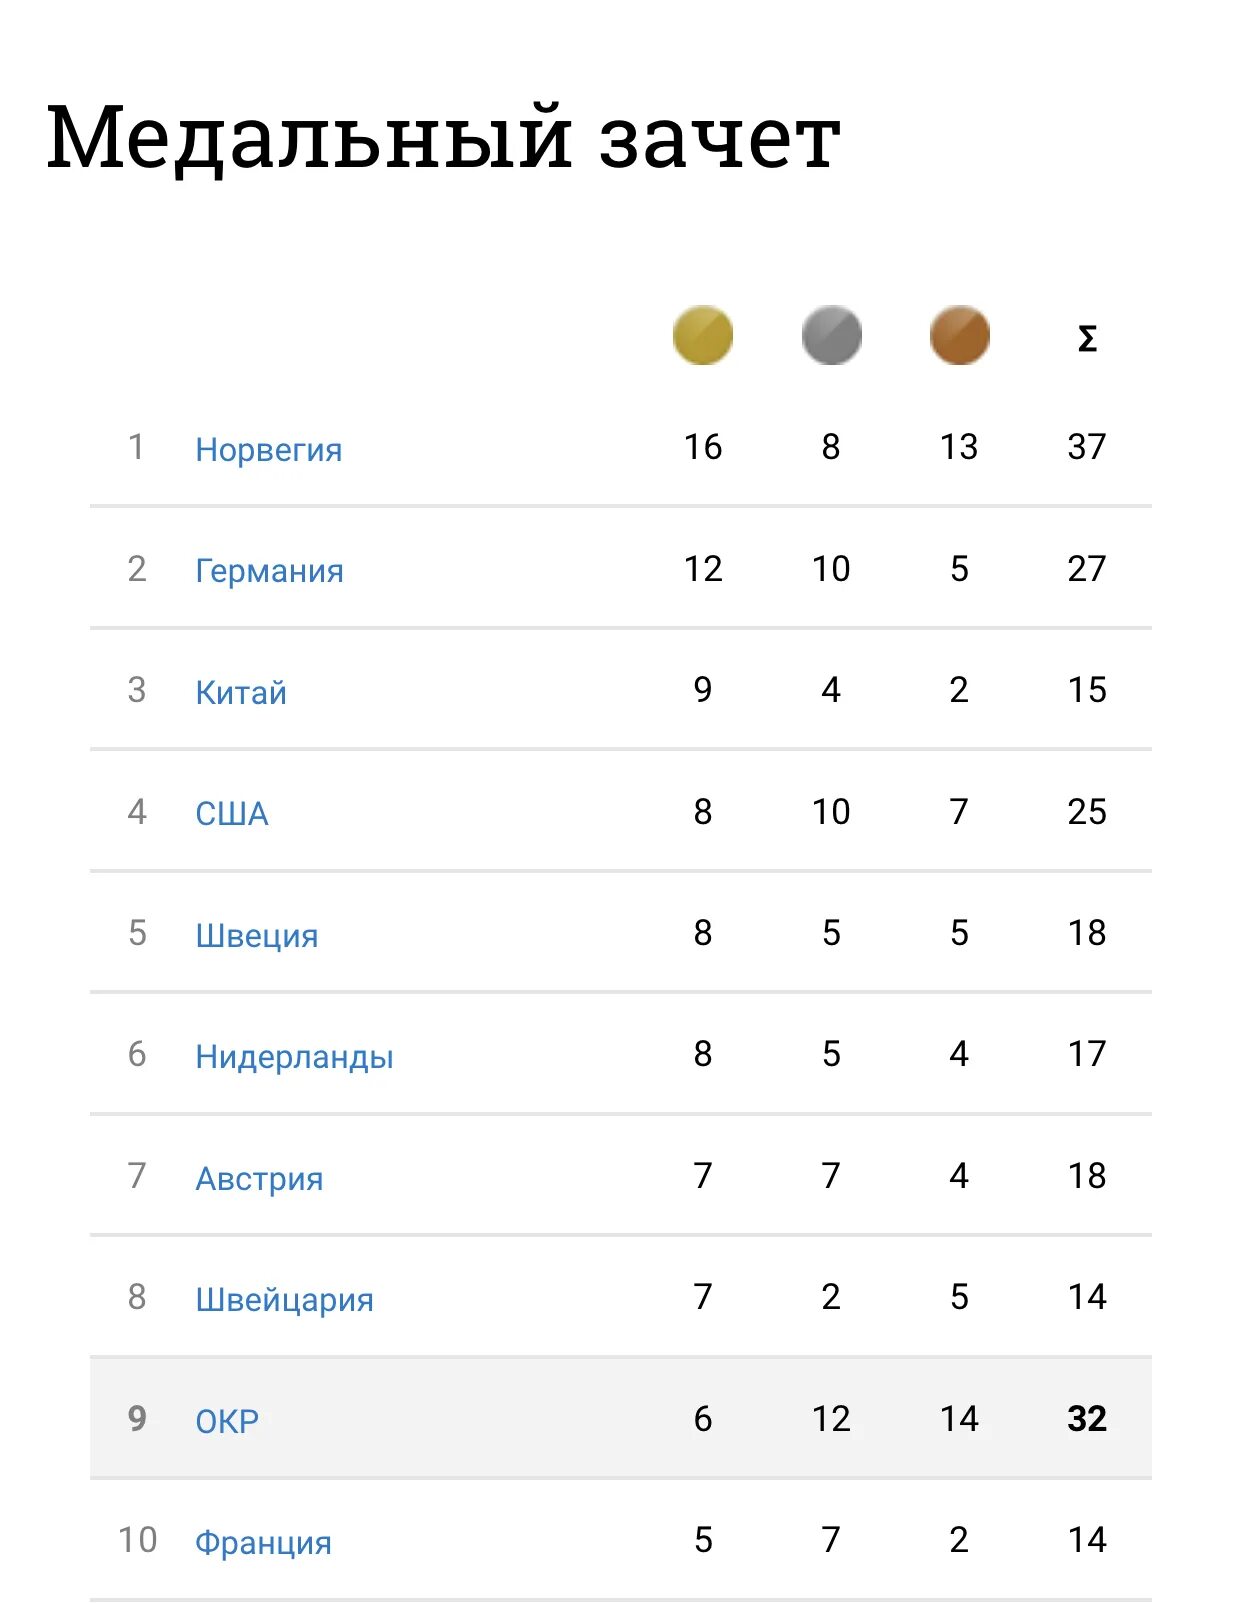 Медальный зачет. Медальный зачет России на Олимпиаде. Медальный зачет олимпиады 2022. Медальный зачёт ОИ 2022. Место россии в медальном зачете